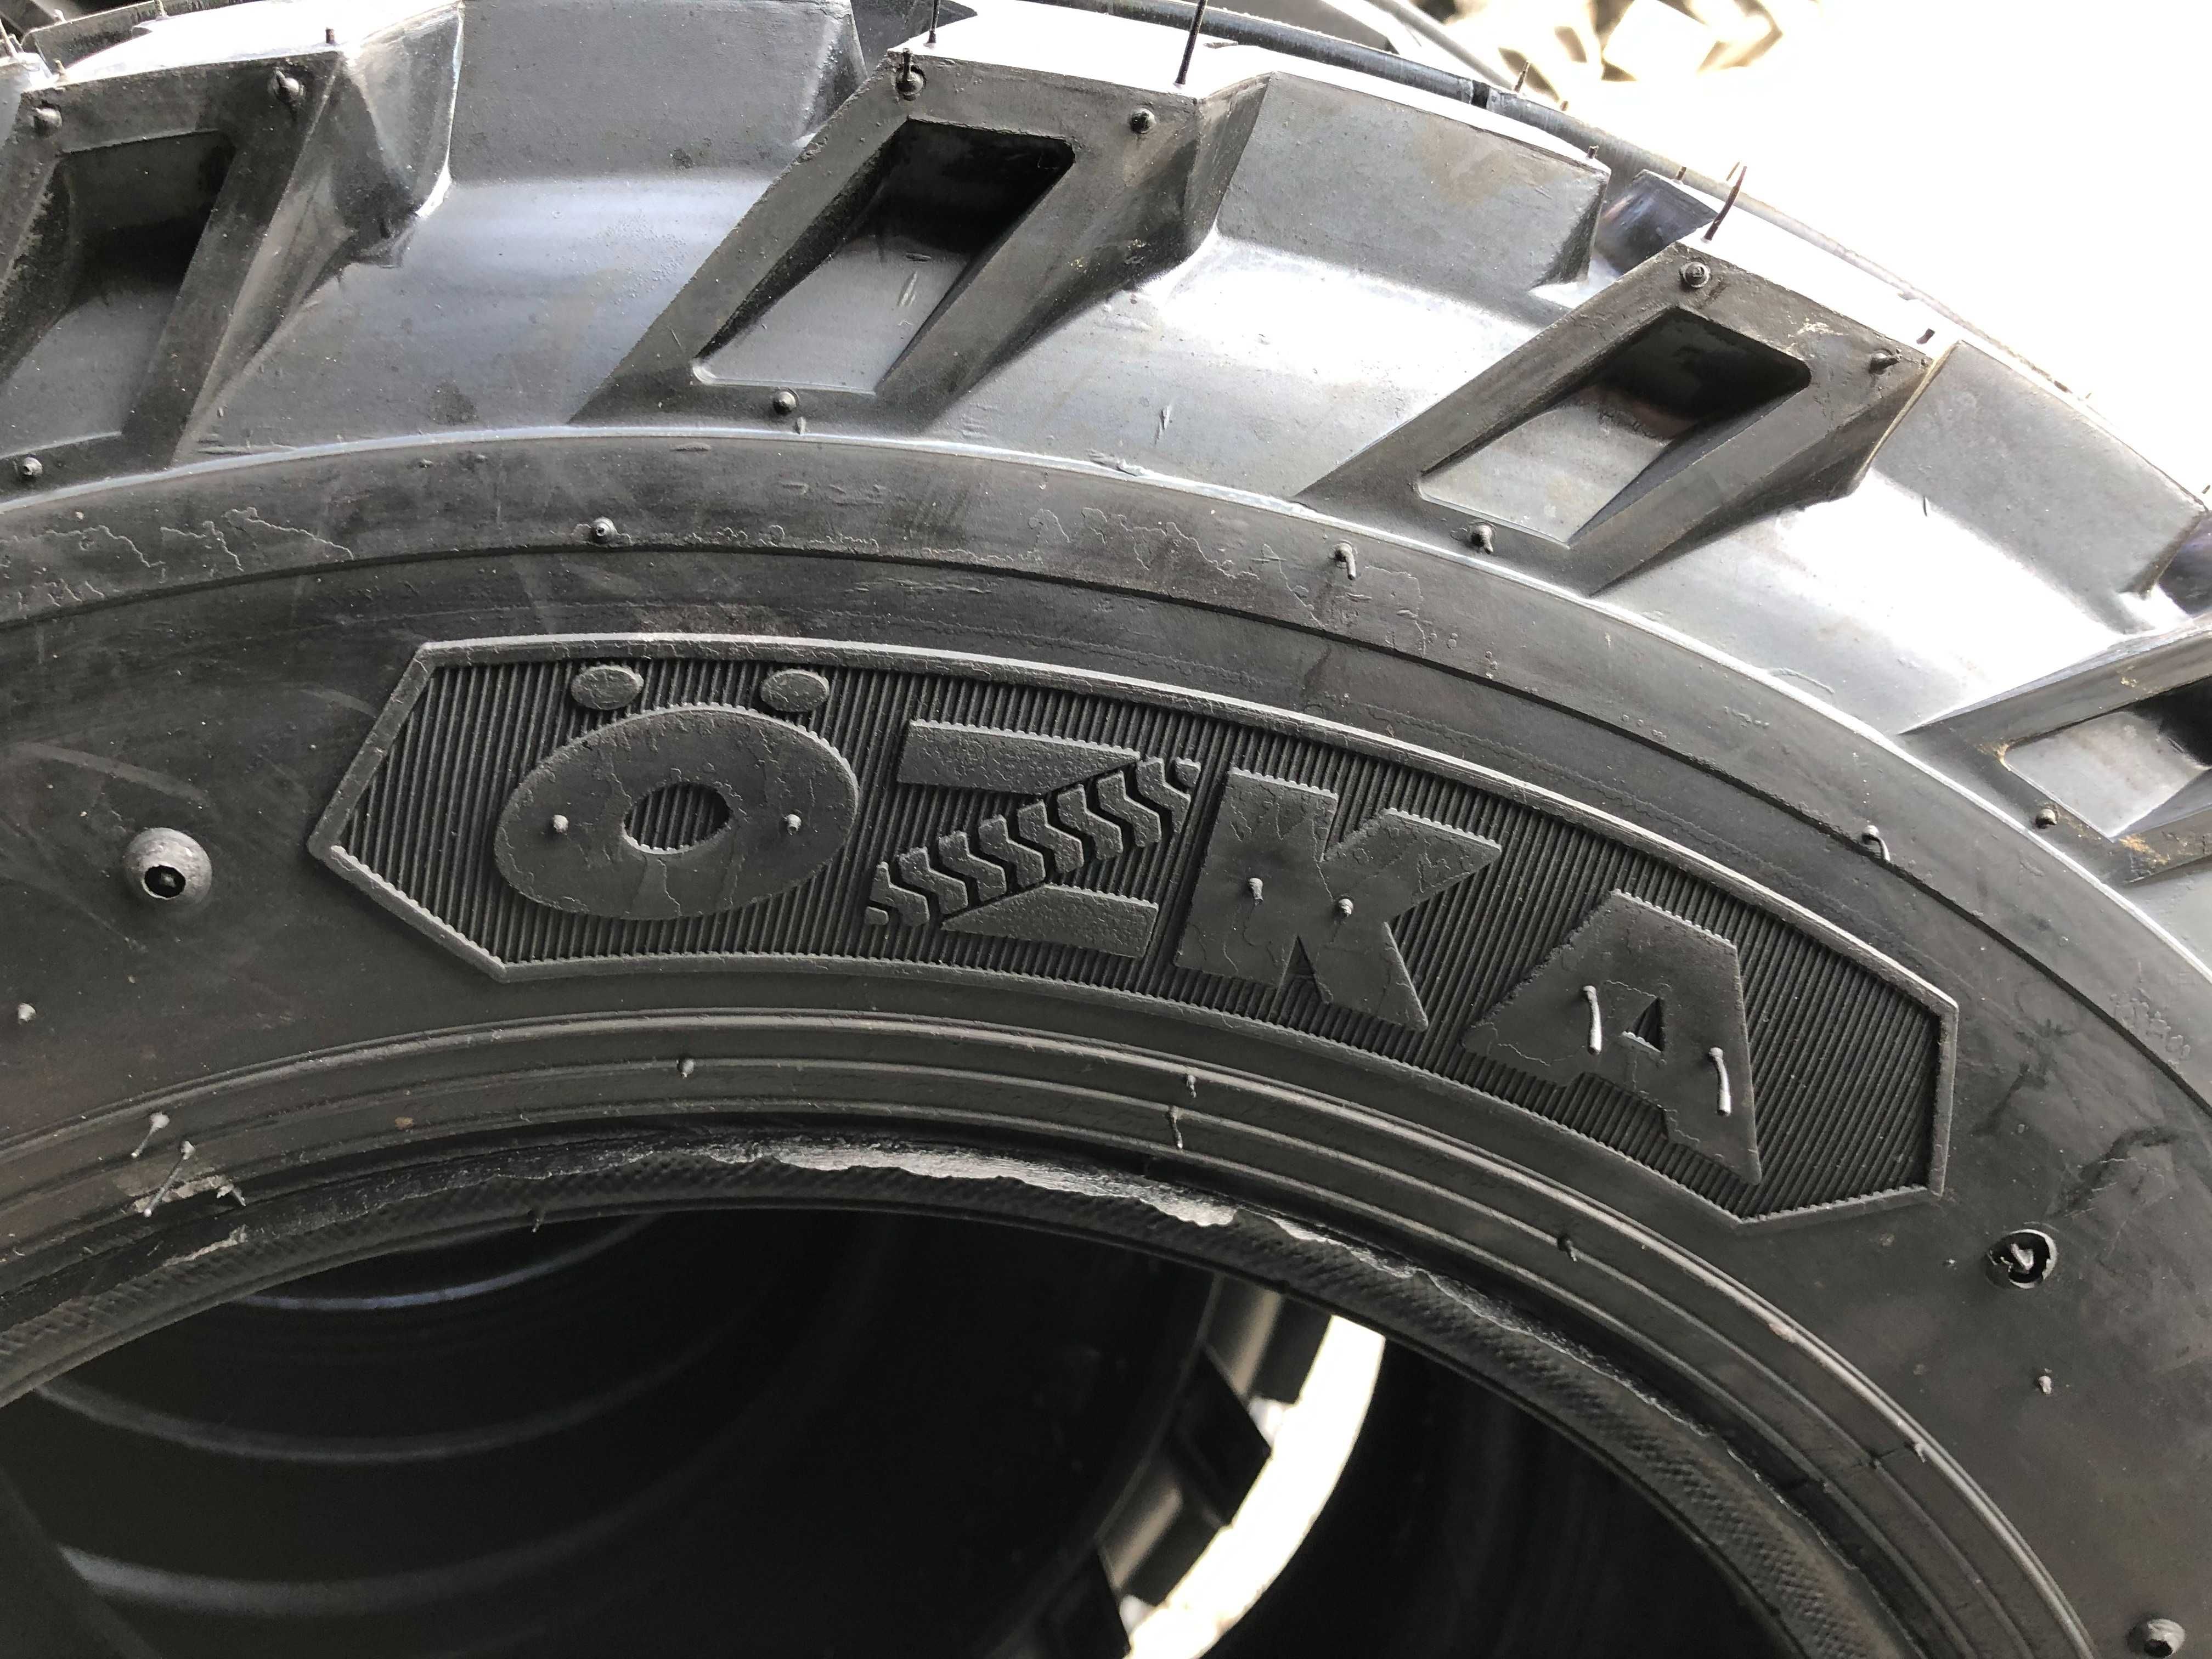 Cauciucuri marca OZKA 6.50-16 cu 6 PLY anvelope noi pentru TRACTOR